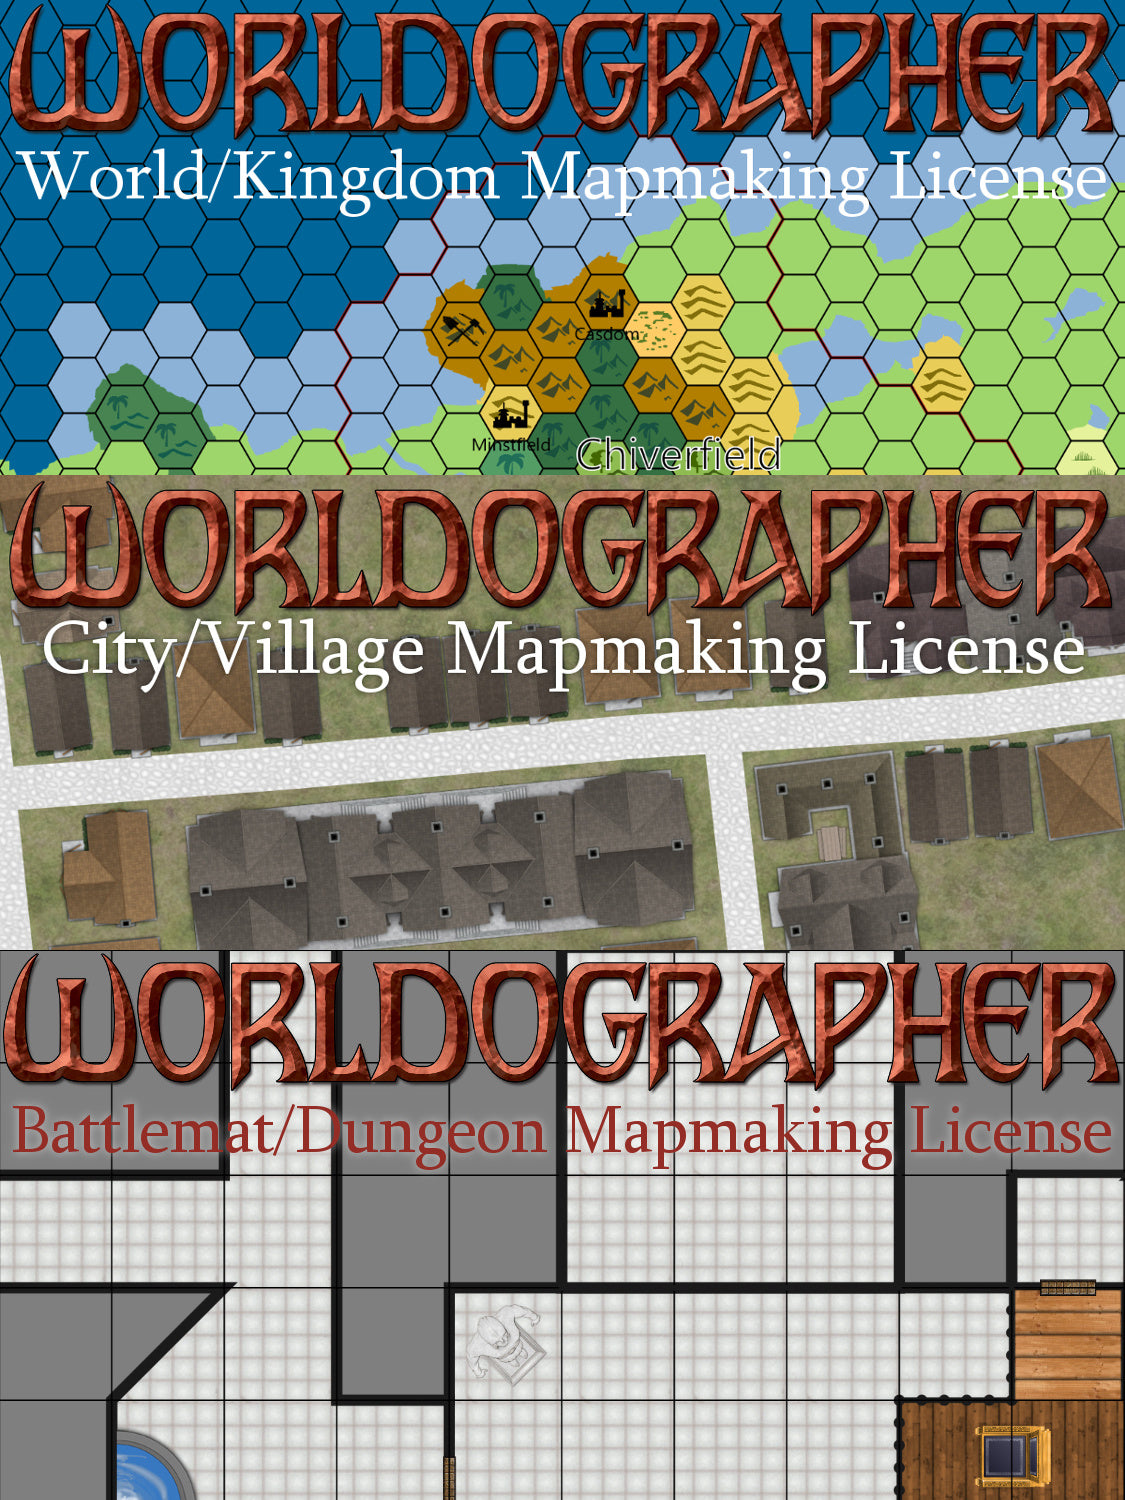 Bundle: Worldographer (Hex 2), City/Village & Dungeon/Battlemat Licenses for Worldographer, & Hexographer 1, Cityographer, Dungeonographer Pro